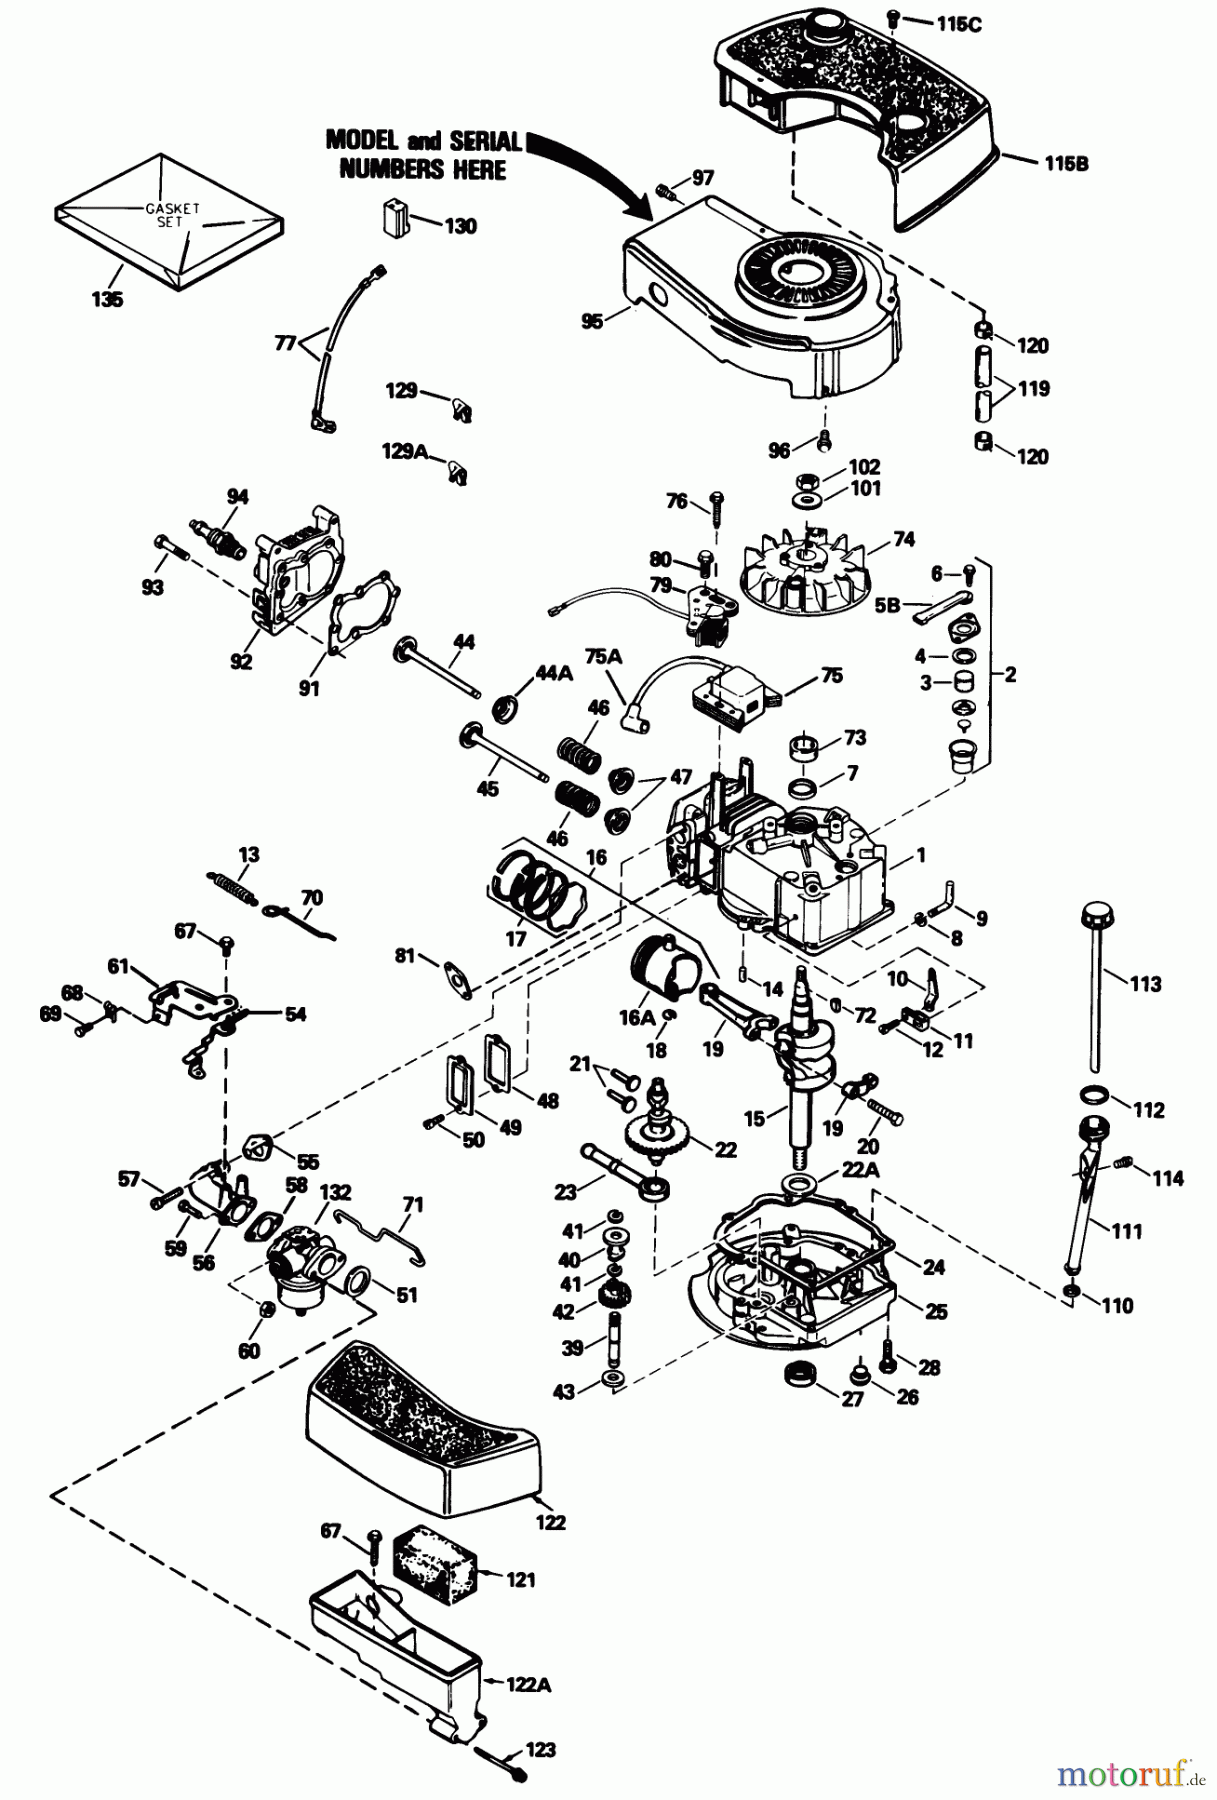  Toro Neu Mowers, Walk-Behind Seite 1 20574 - Toro Lawnmower, 1989 (9000001-9999999) ENGINE MODEL NO. TNT 100-10104F